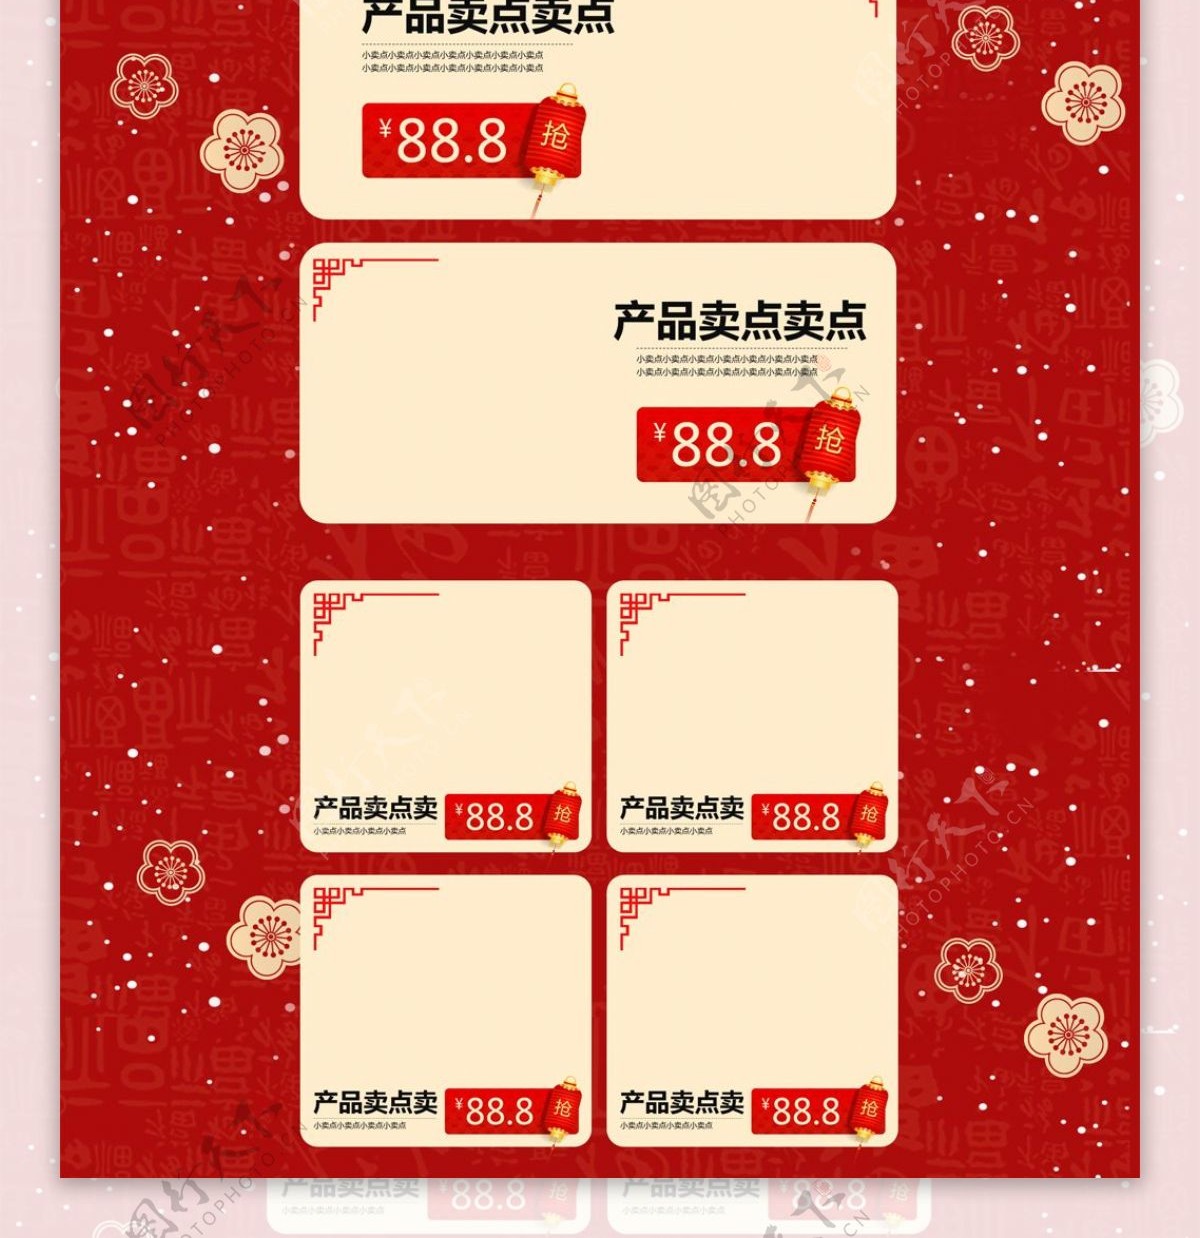 红色喜庆春节不打烊休闲零食首页促销模板